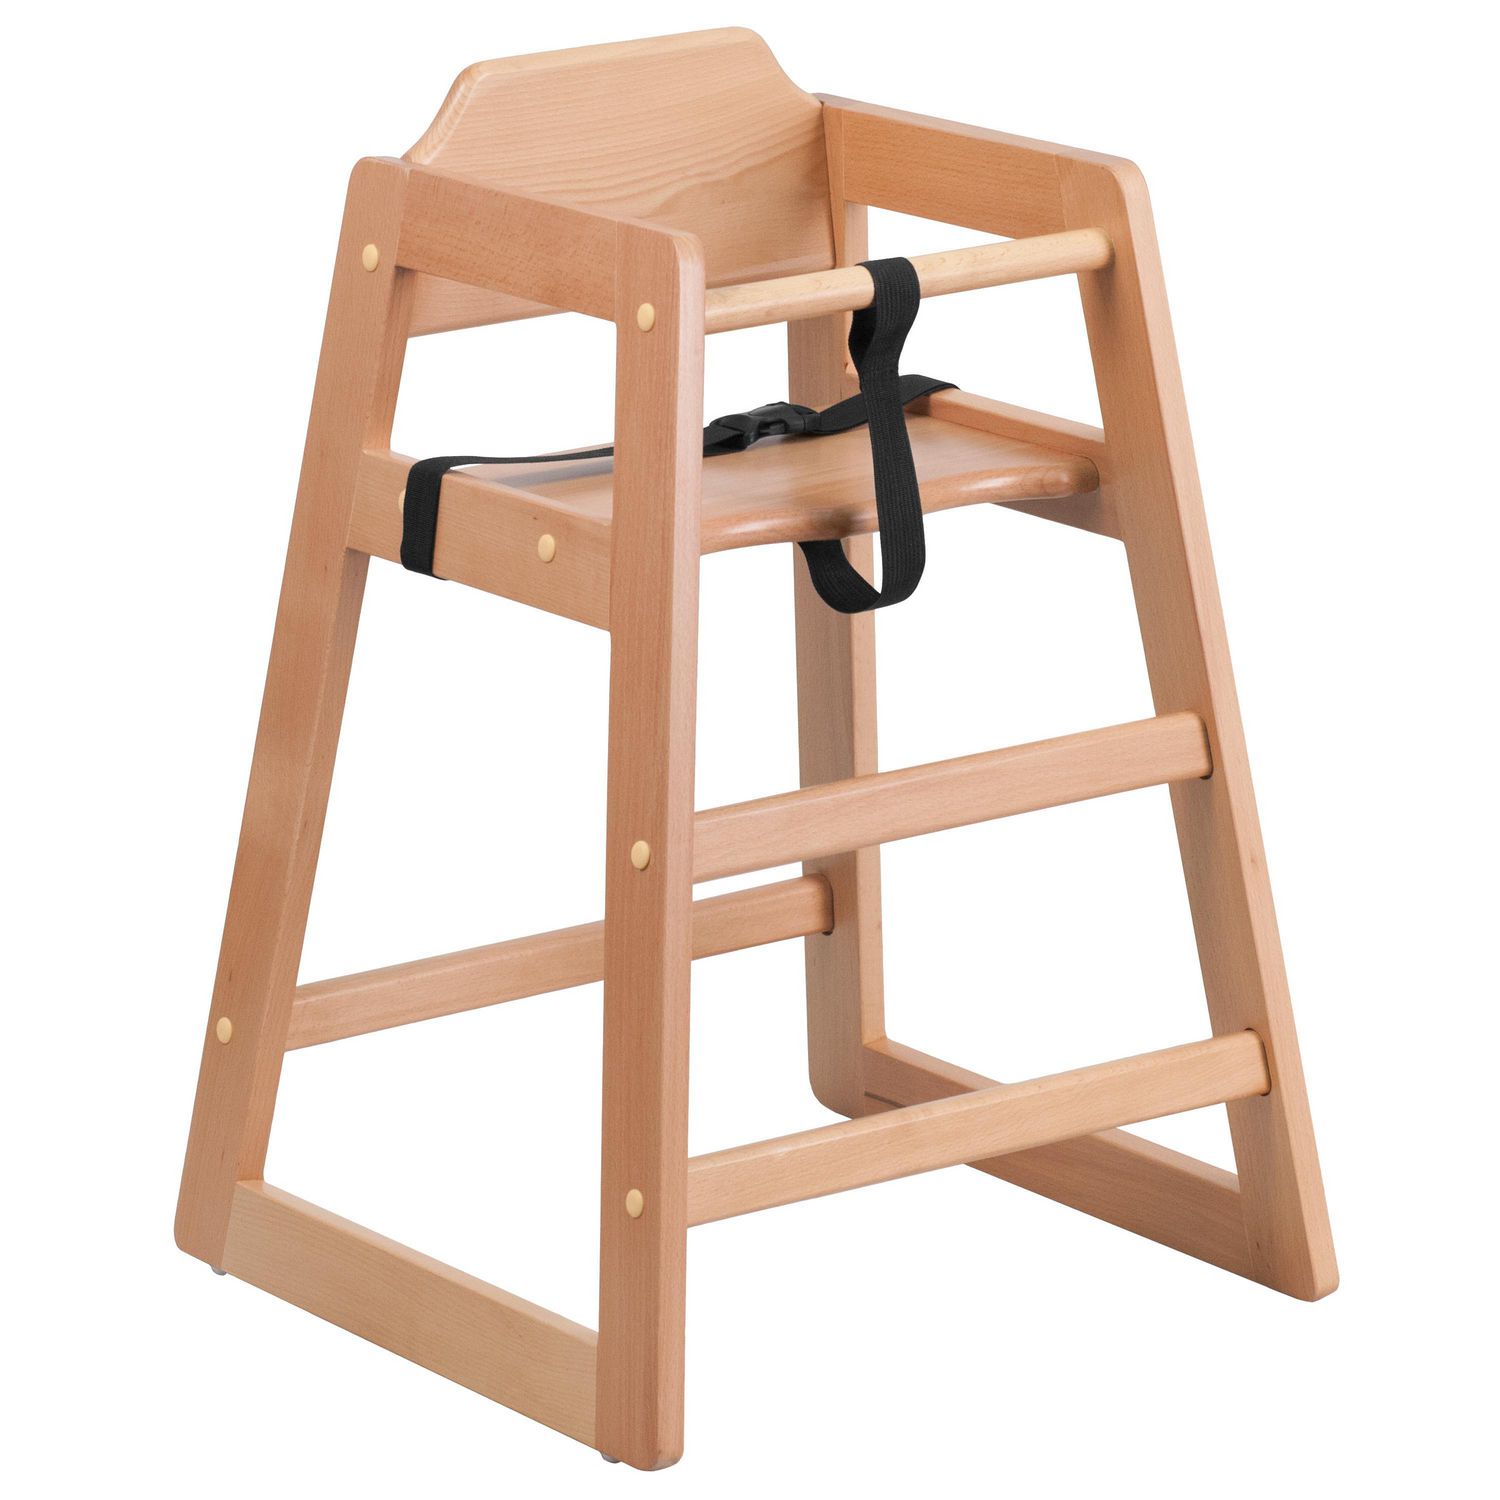 Safetots Chaise haute simplement empilable bois naturel 